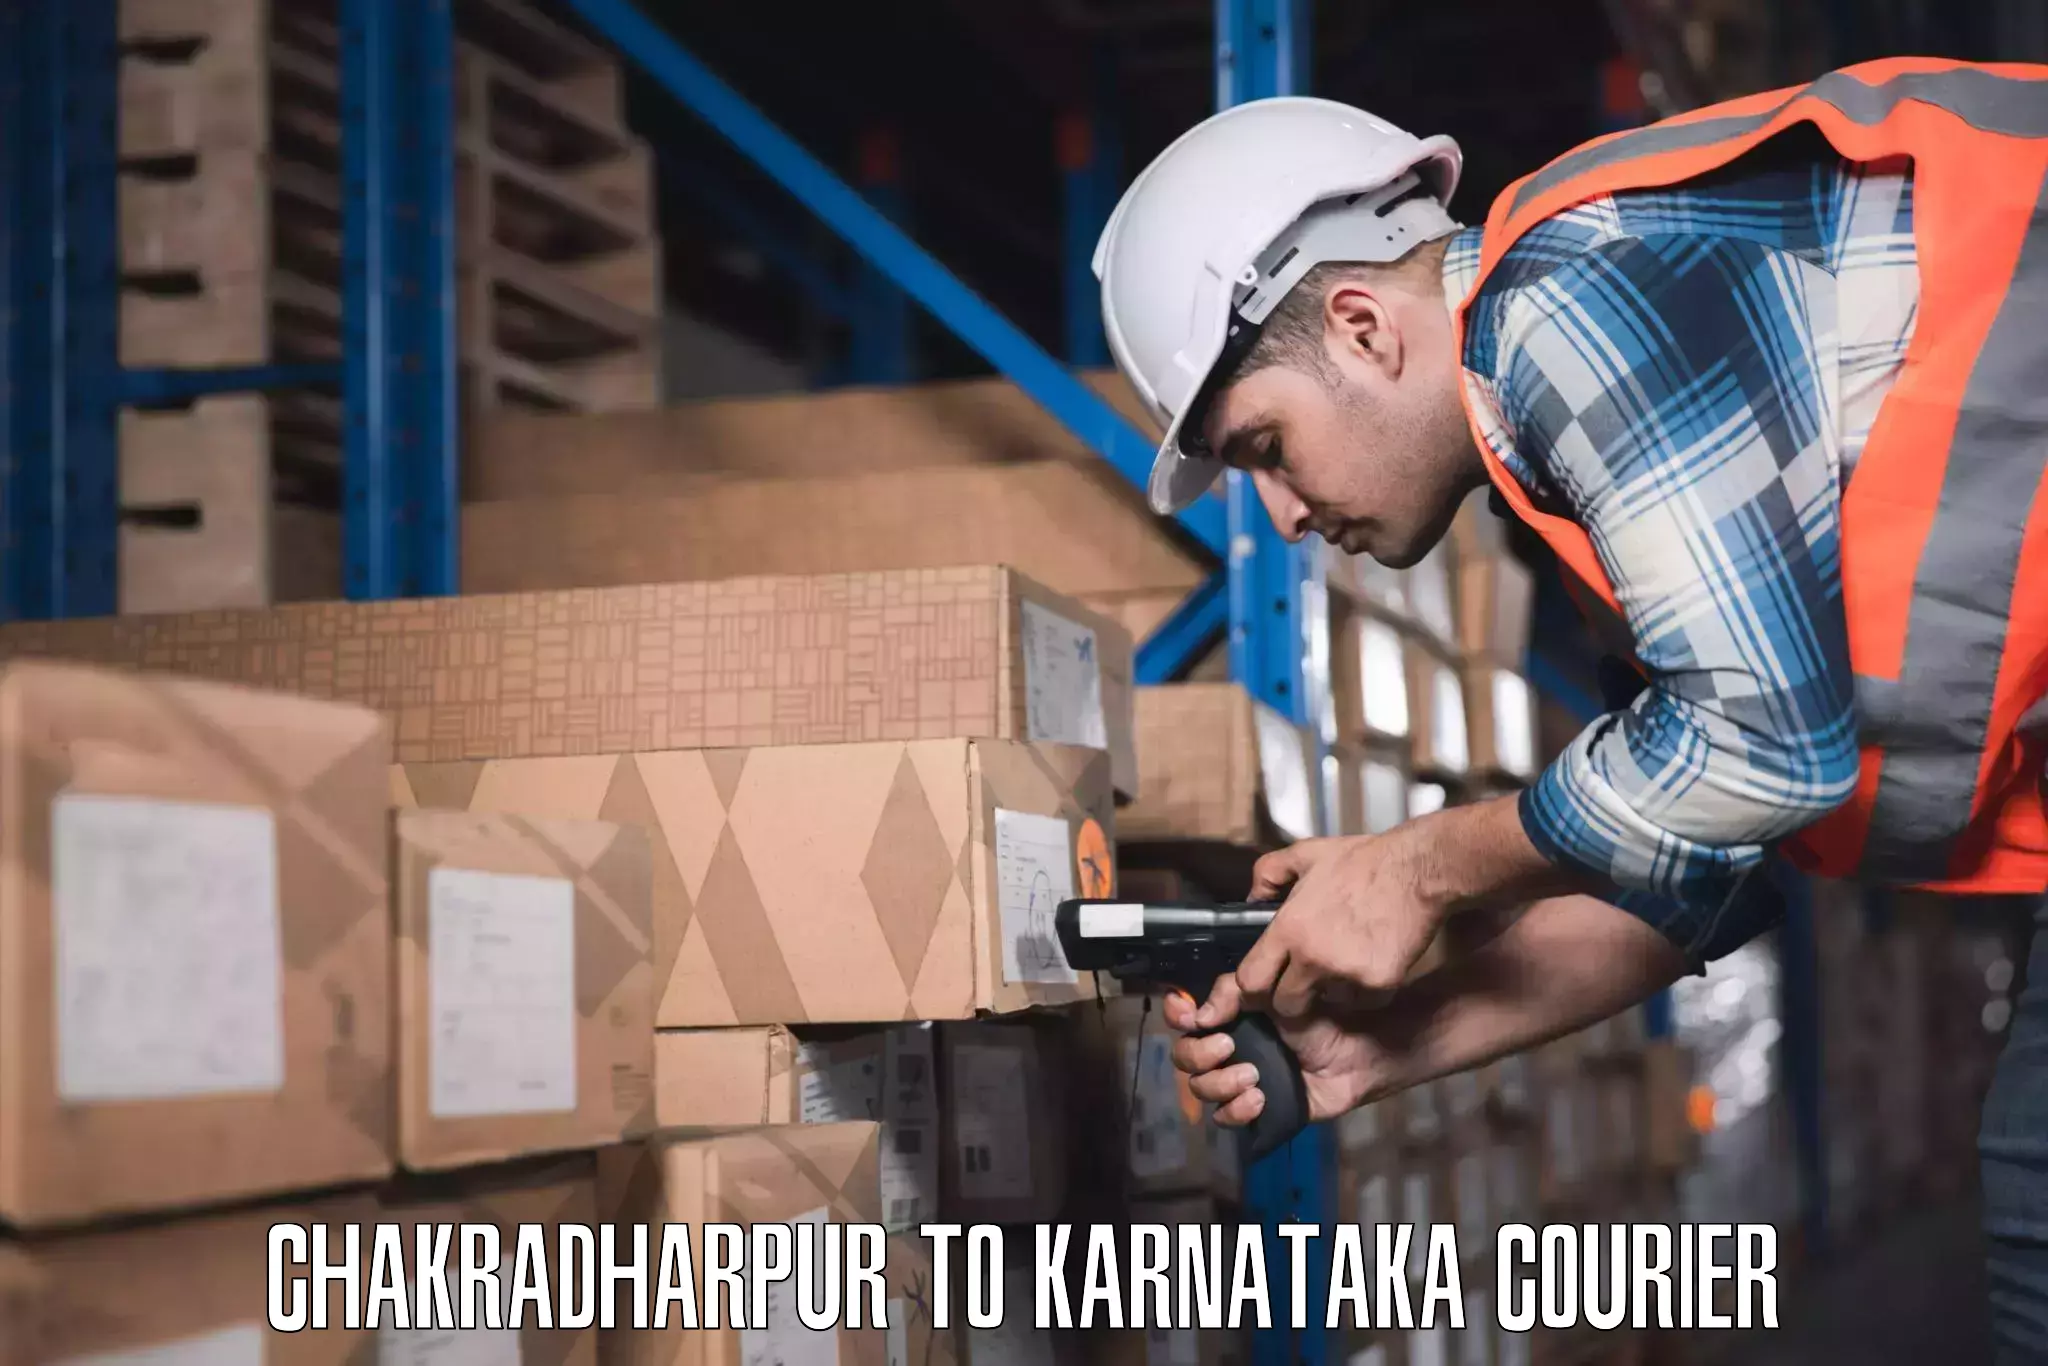 Baggage courier guide Chakradharpur to Karnataka